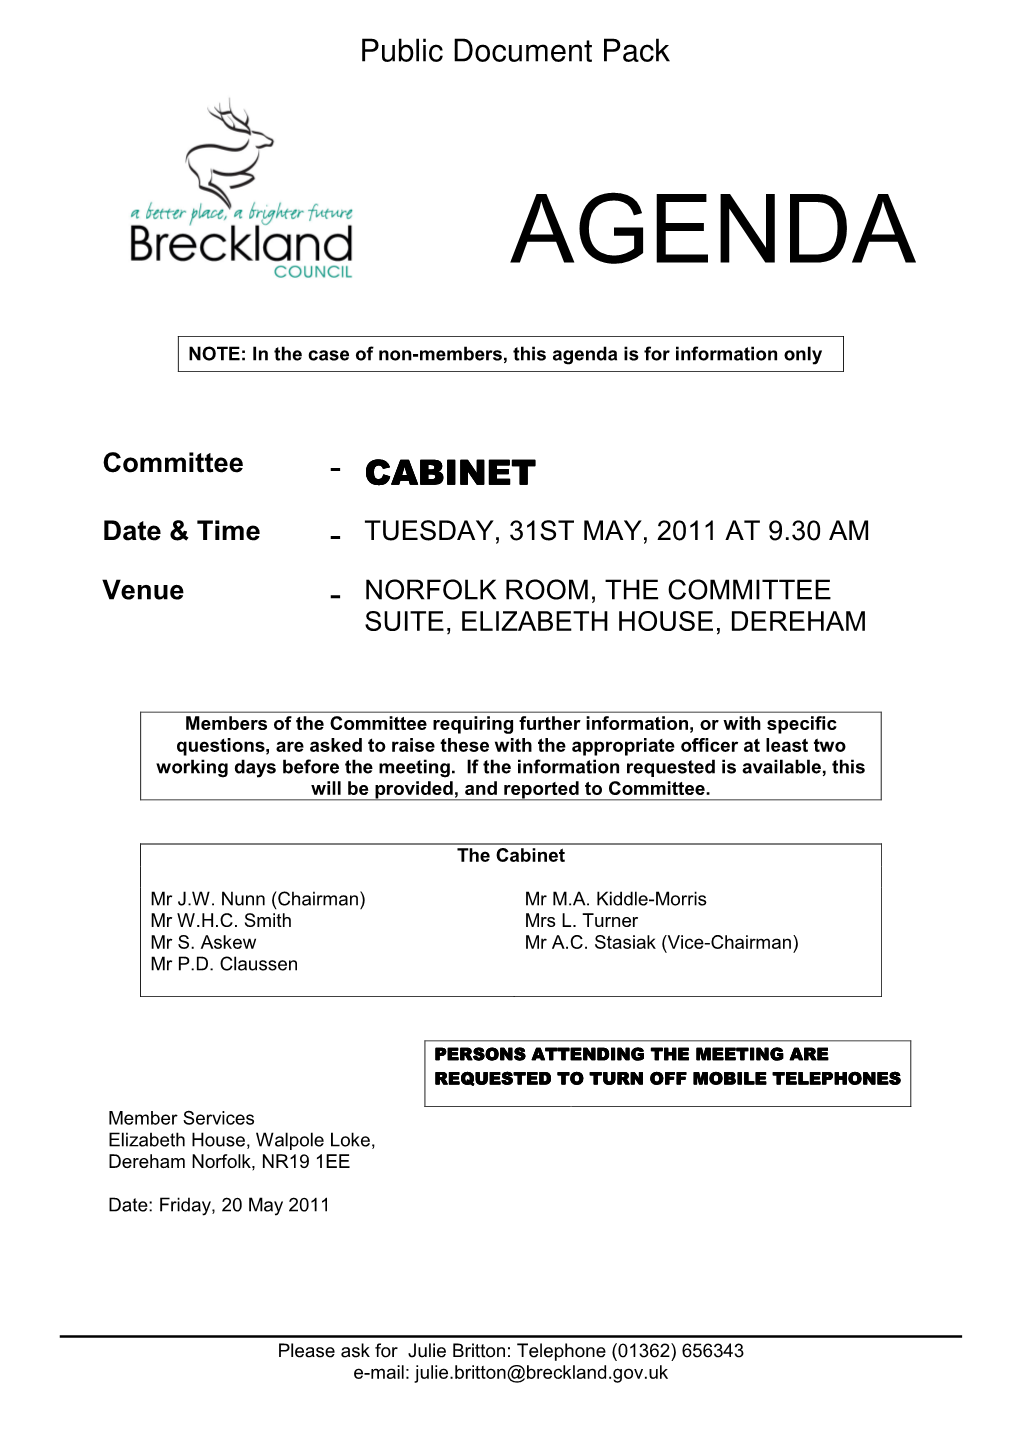 Agenda Frontsheet 31/05/2011, 09.30